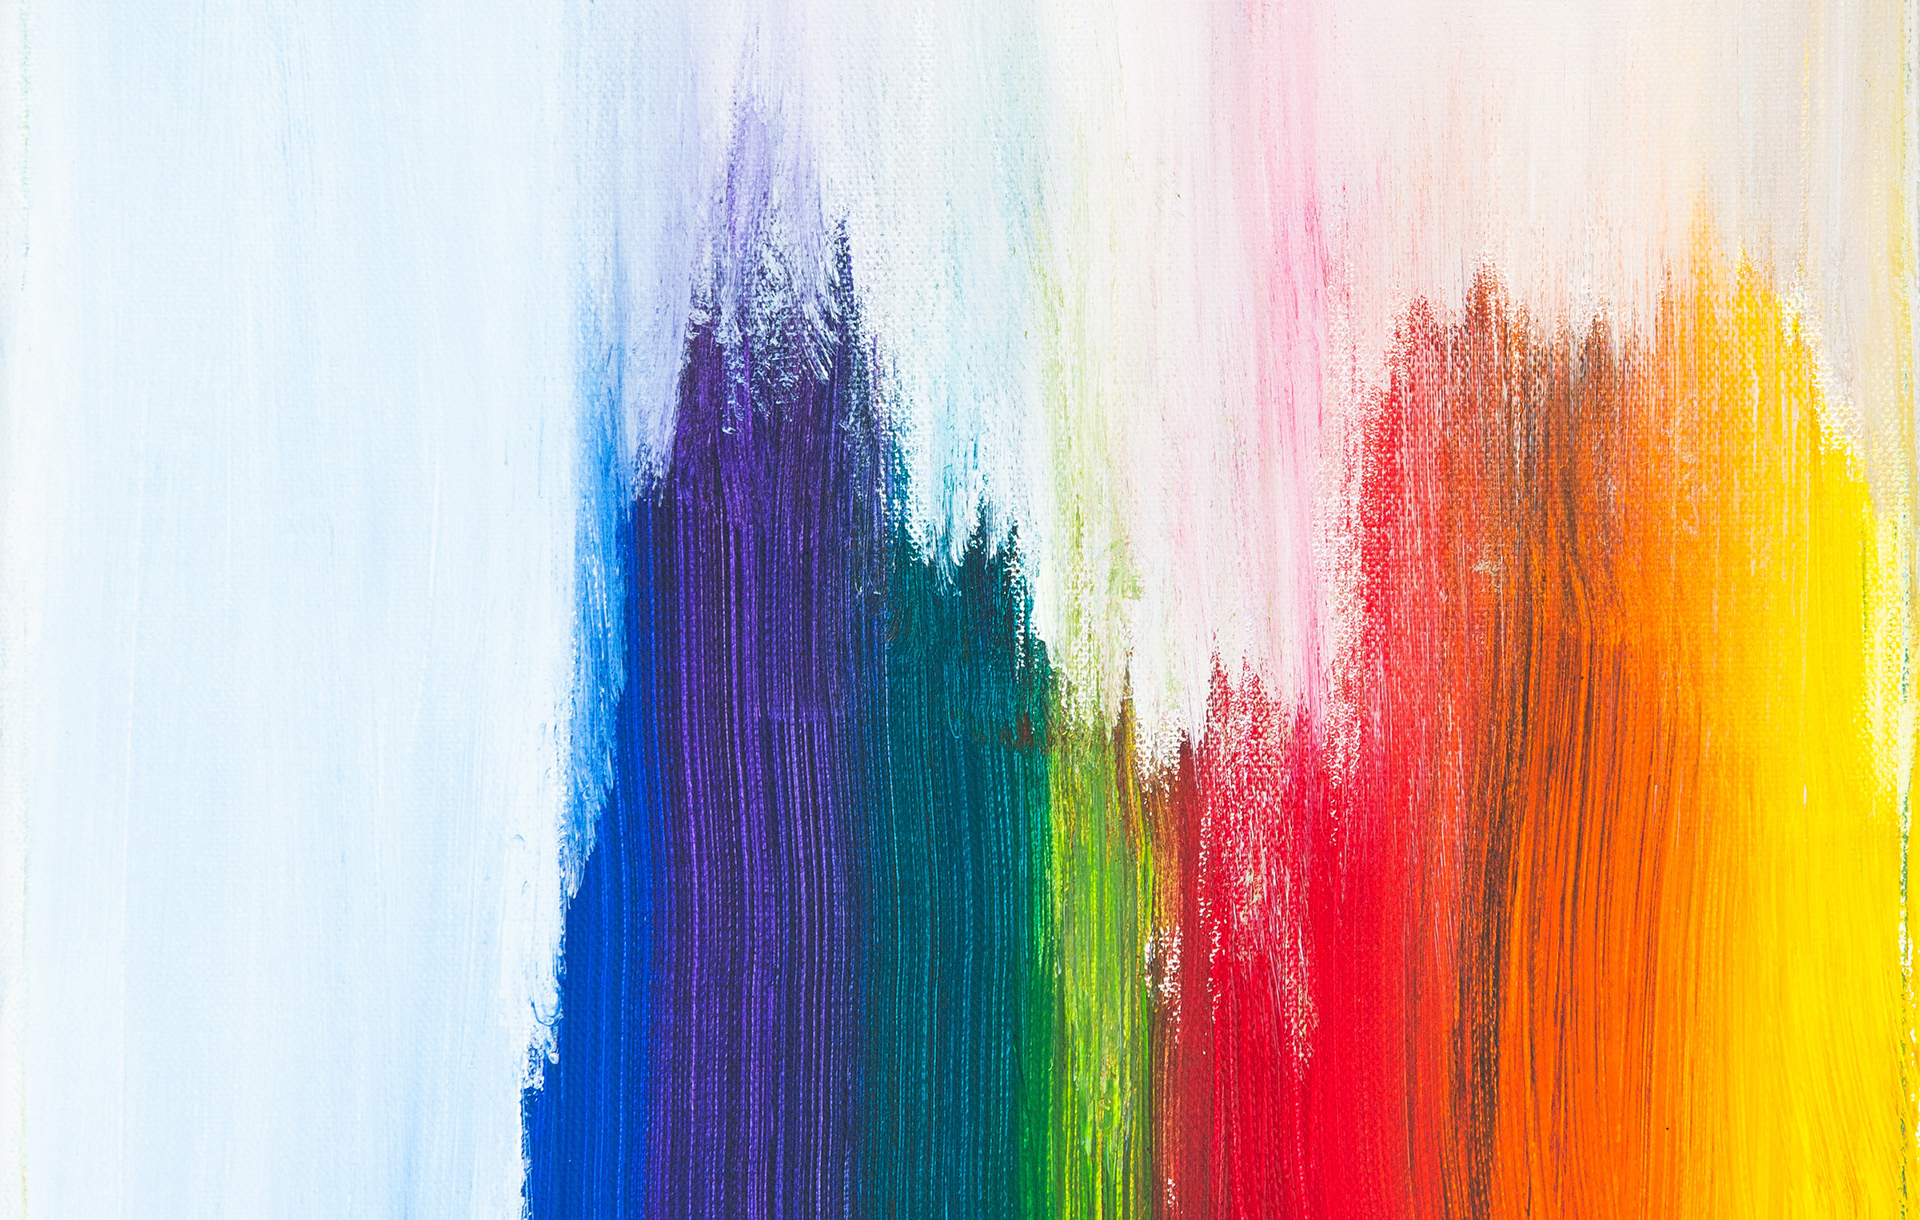 Abstrakt bild på regnbågsfärgade penseldrag.